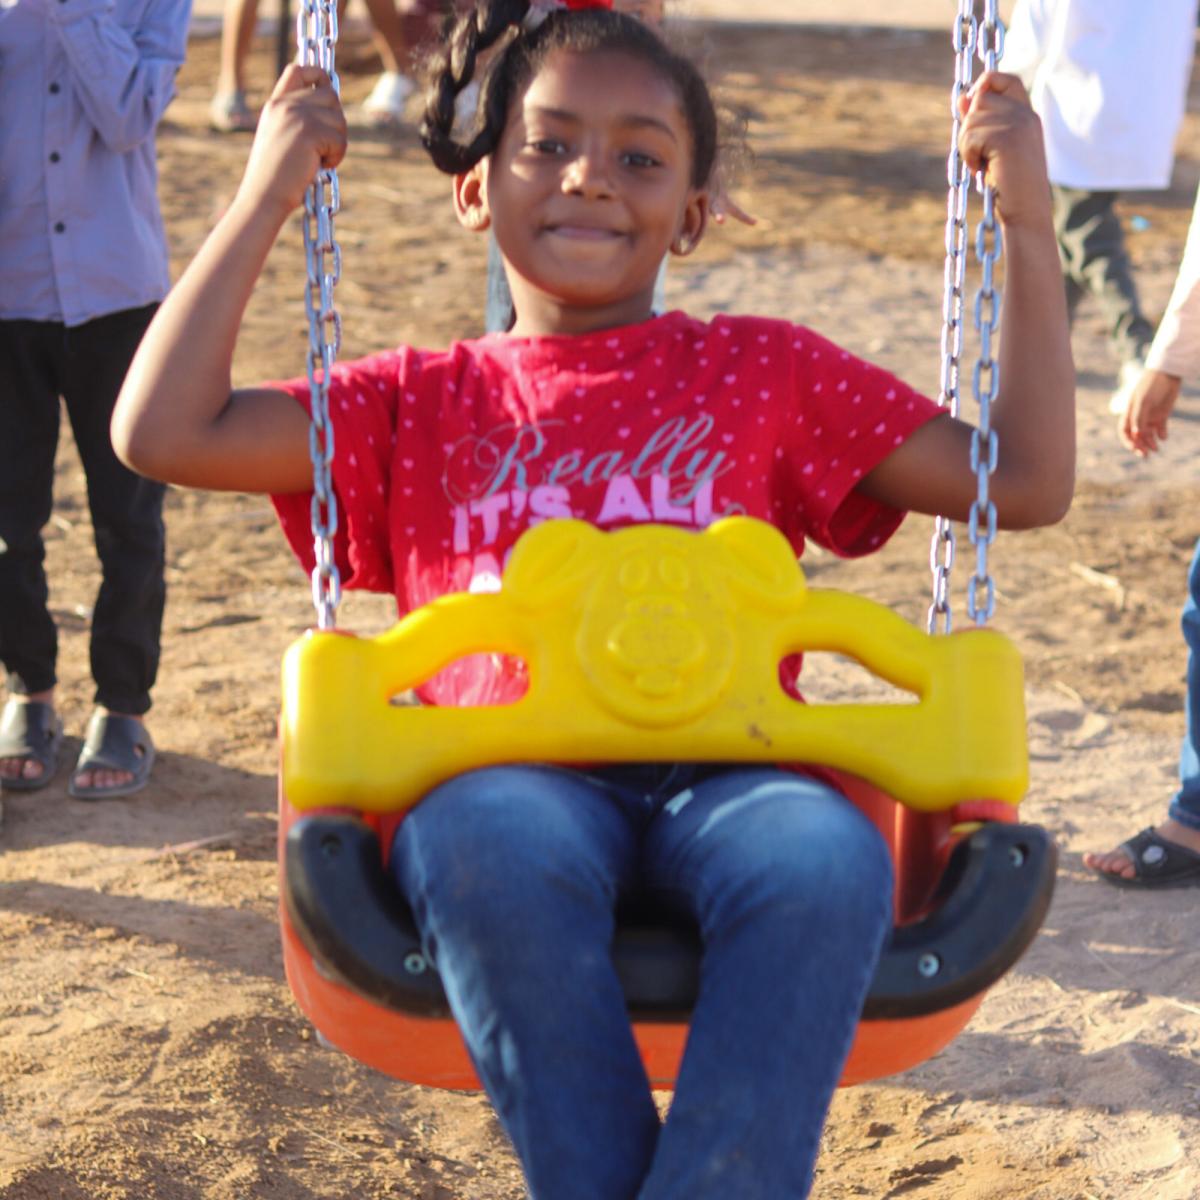 Children enjoying the new playground in Ghadamis, Libya